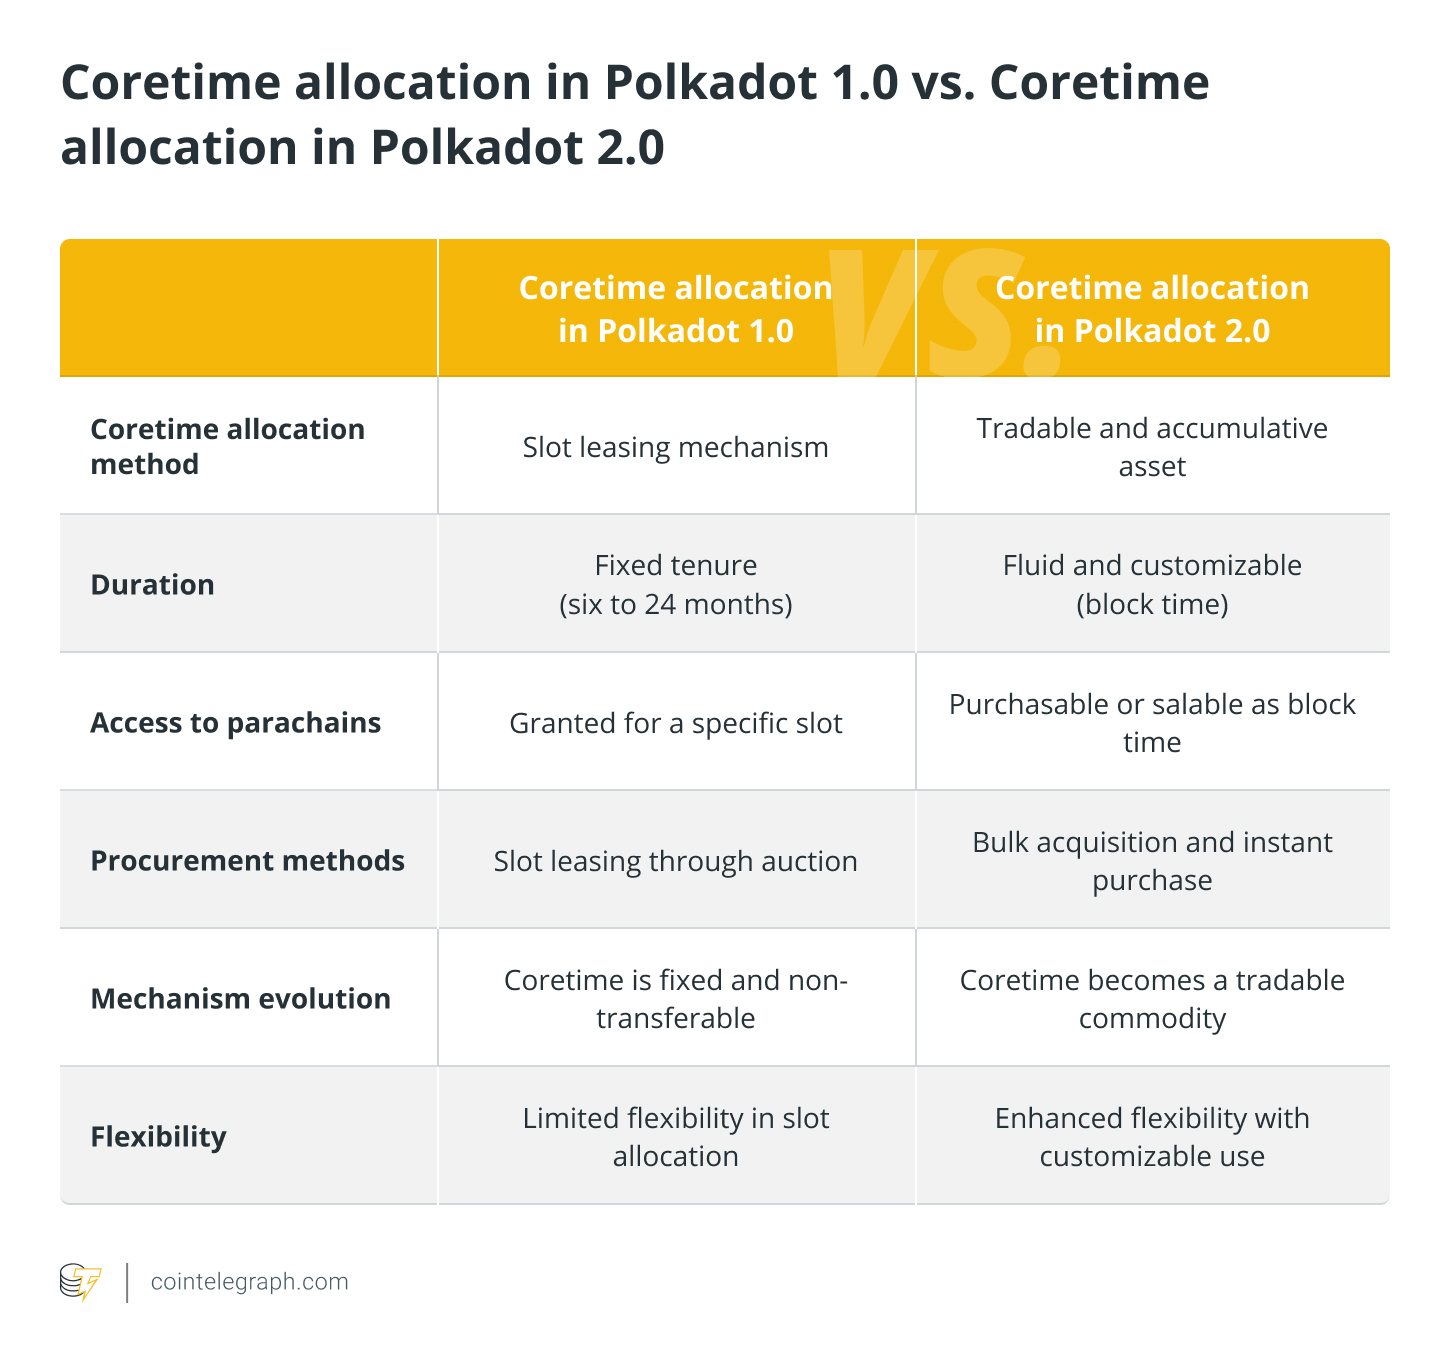 Coretime allocation in Polkadot 1.0 vs. Coretime allocation in Polkadot 2.0